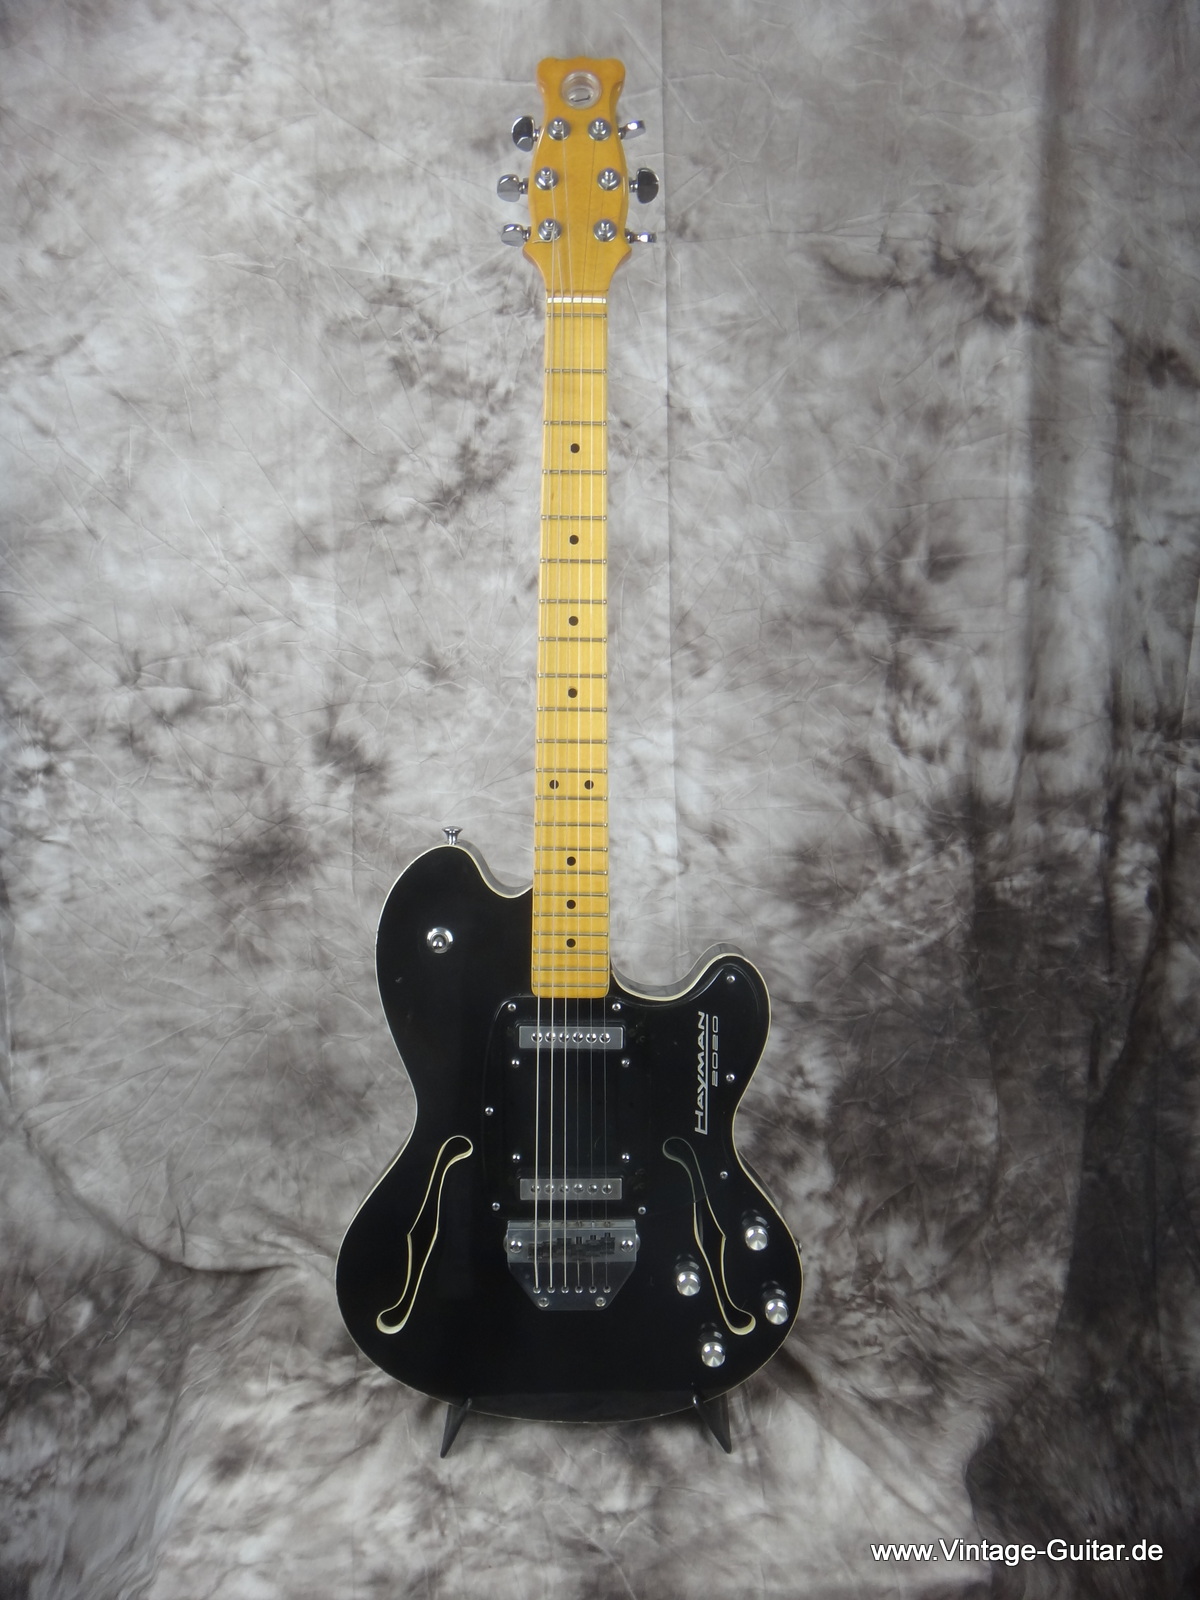 1973 Hayman 2020 guitar